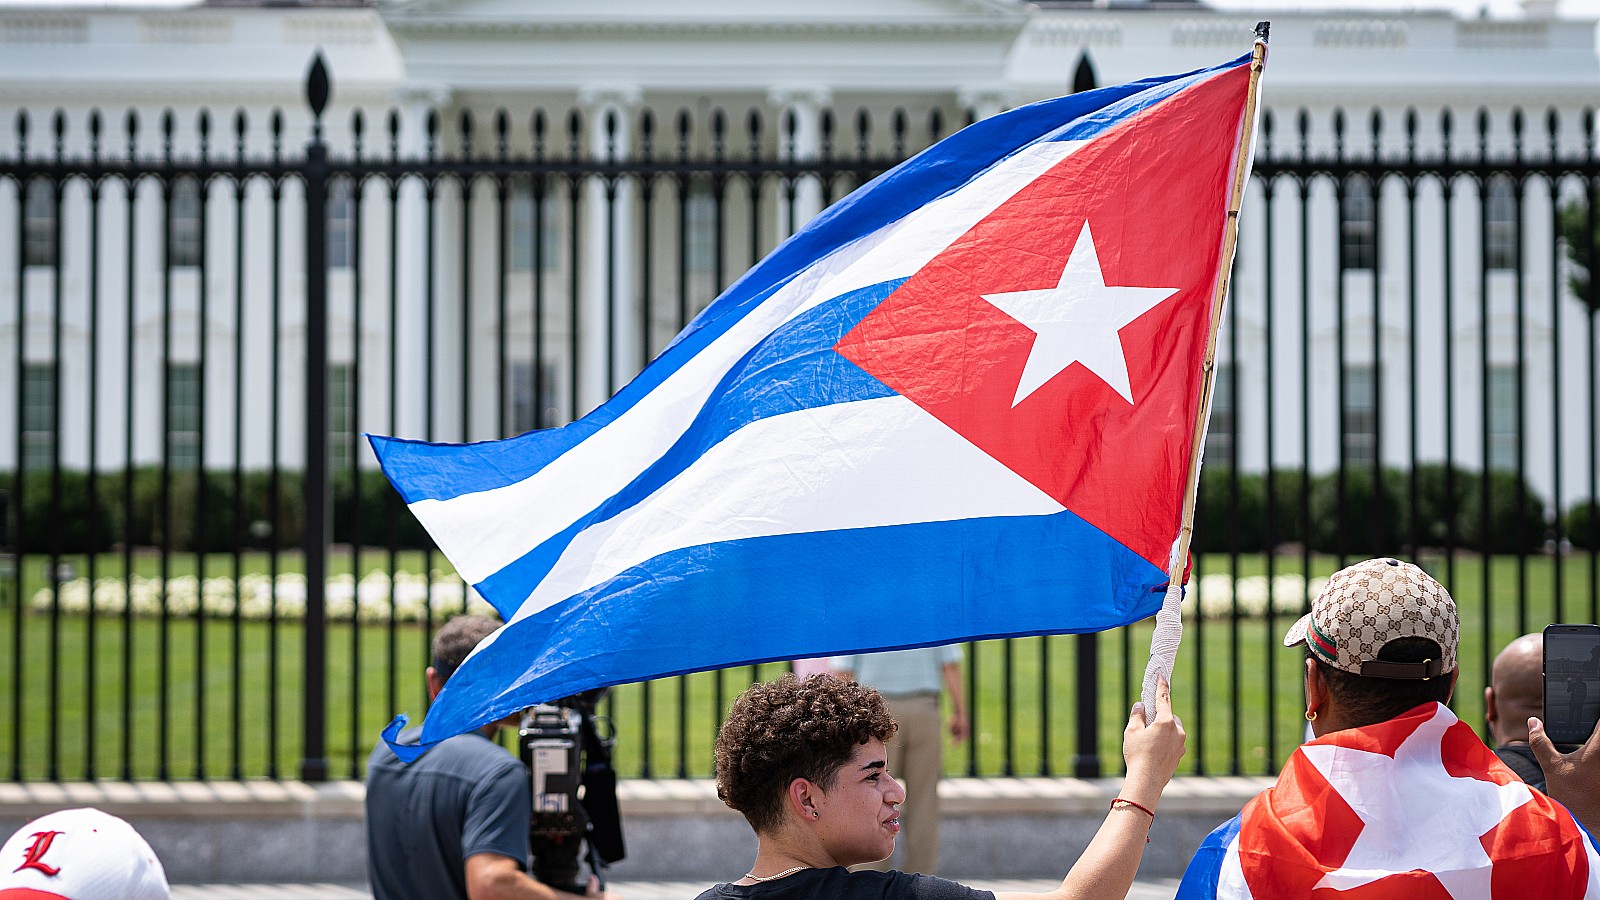 Estados Unidos levantará restricciones a Cuba